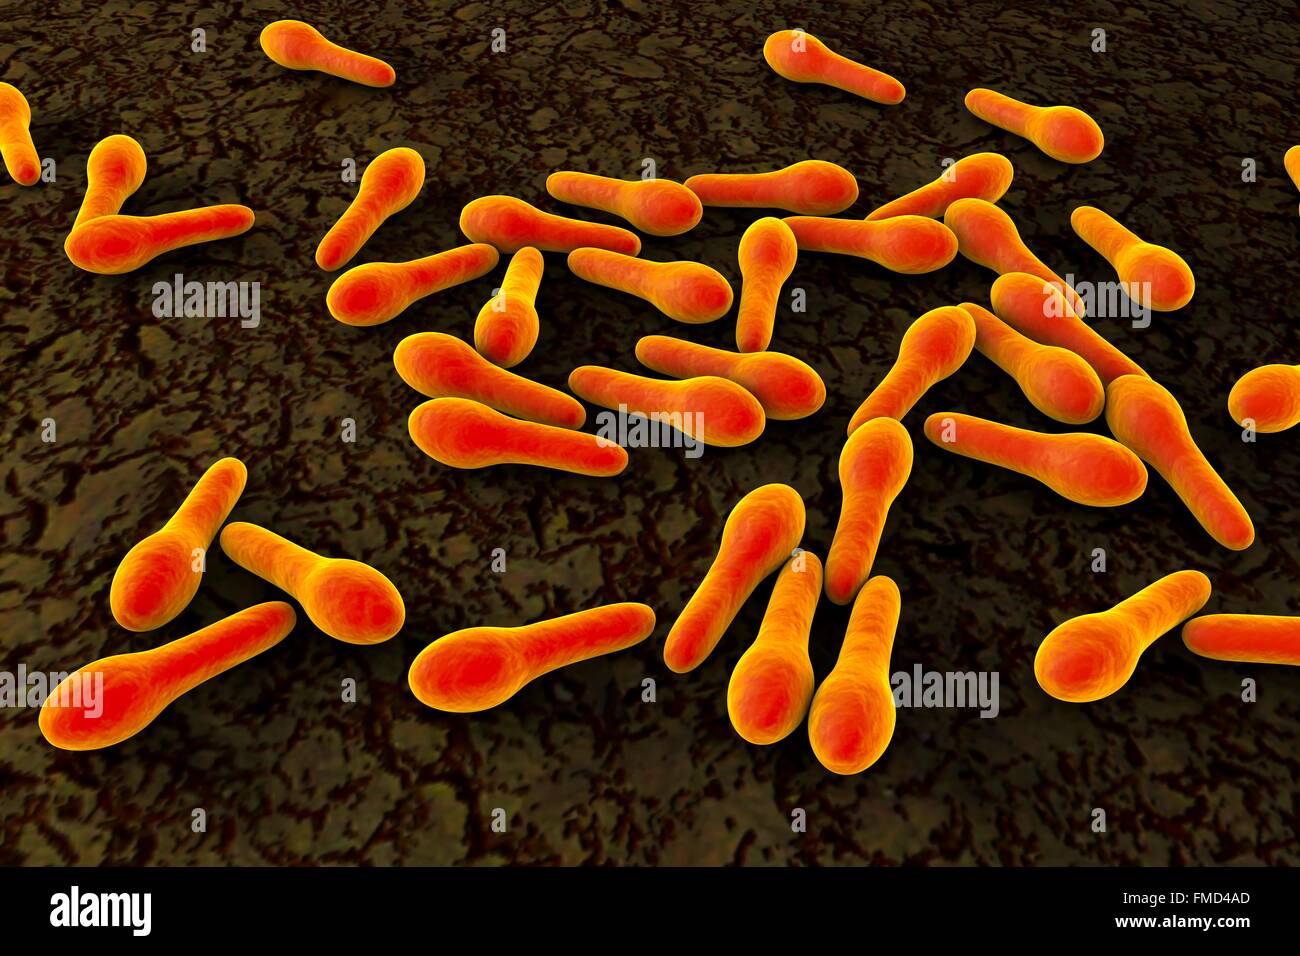 La bactérie Clostridium tetani, illustration de l'ordinateur. Clostridium tetani bactéries provoquent le tétanos qui se développe en raison de la contamination de plaie par les spores de bactéries, principalement trouvés dans le sol. Banque D'Images